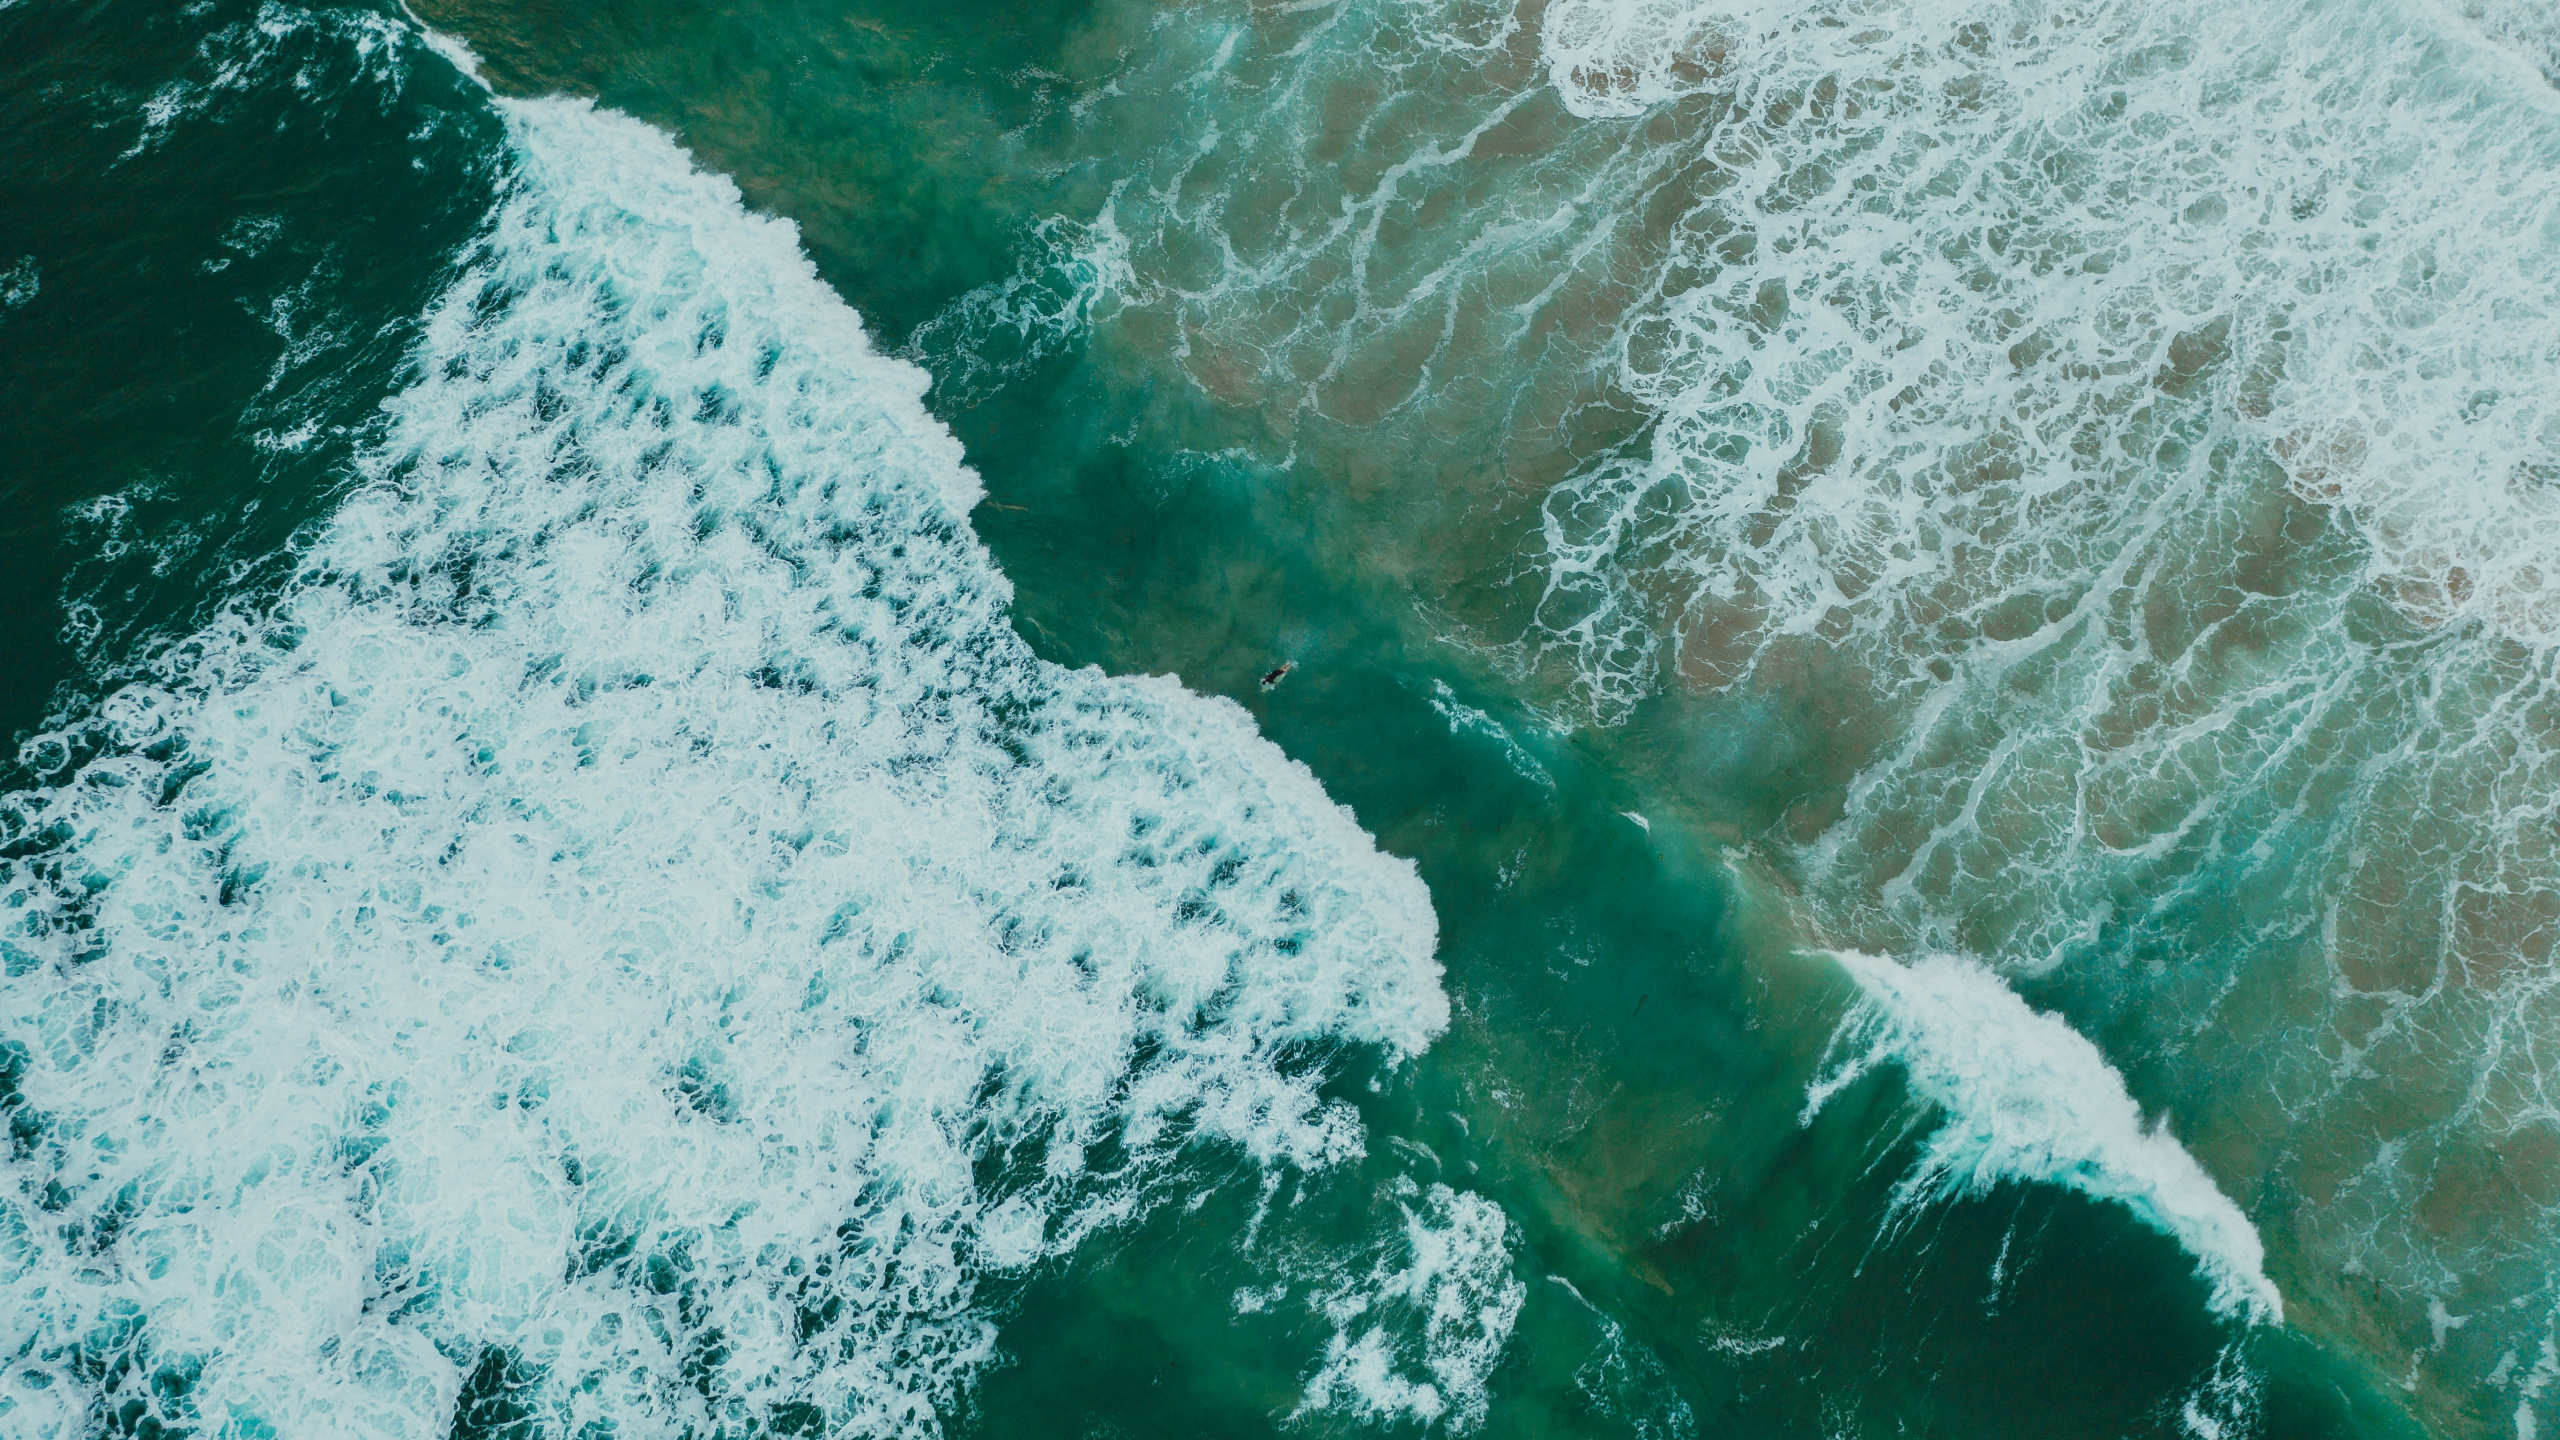 Ozean, Meer, Wind Welle, Wasser, Welle. Wallpaper in 2560x1440 Resolution